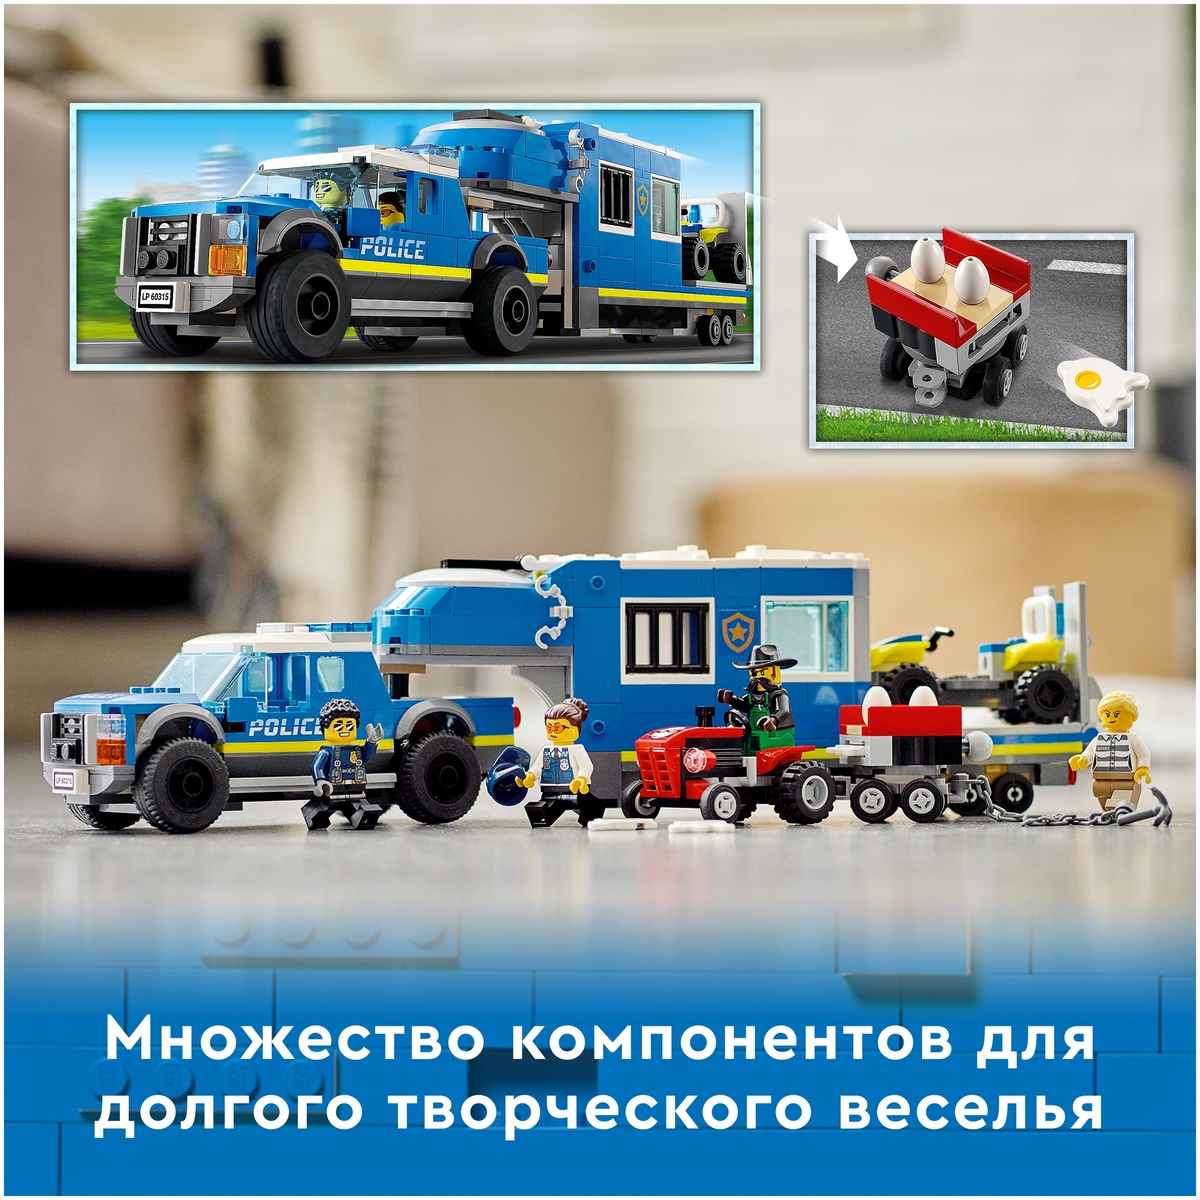 Купить Конструктор LEGO 60315 Город Полицейский мобильный командный трейлер